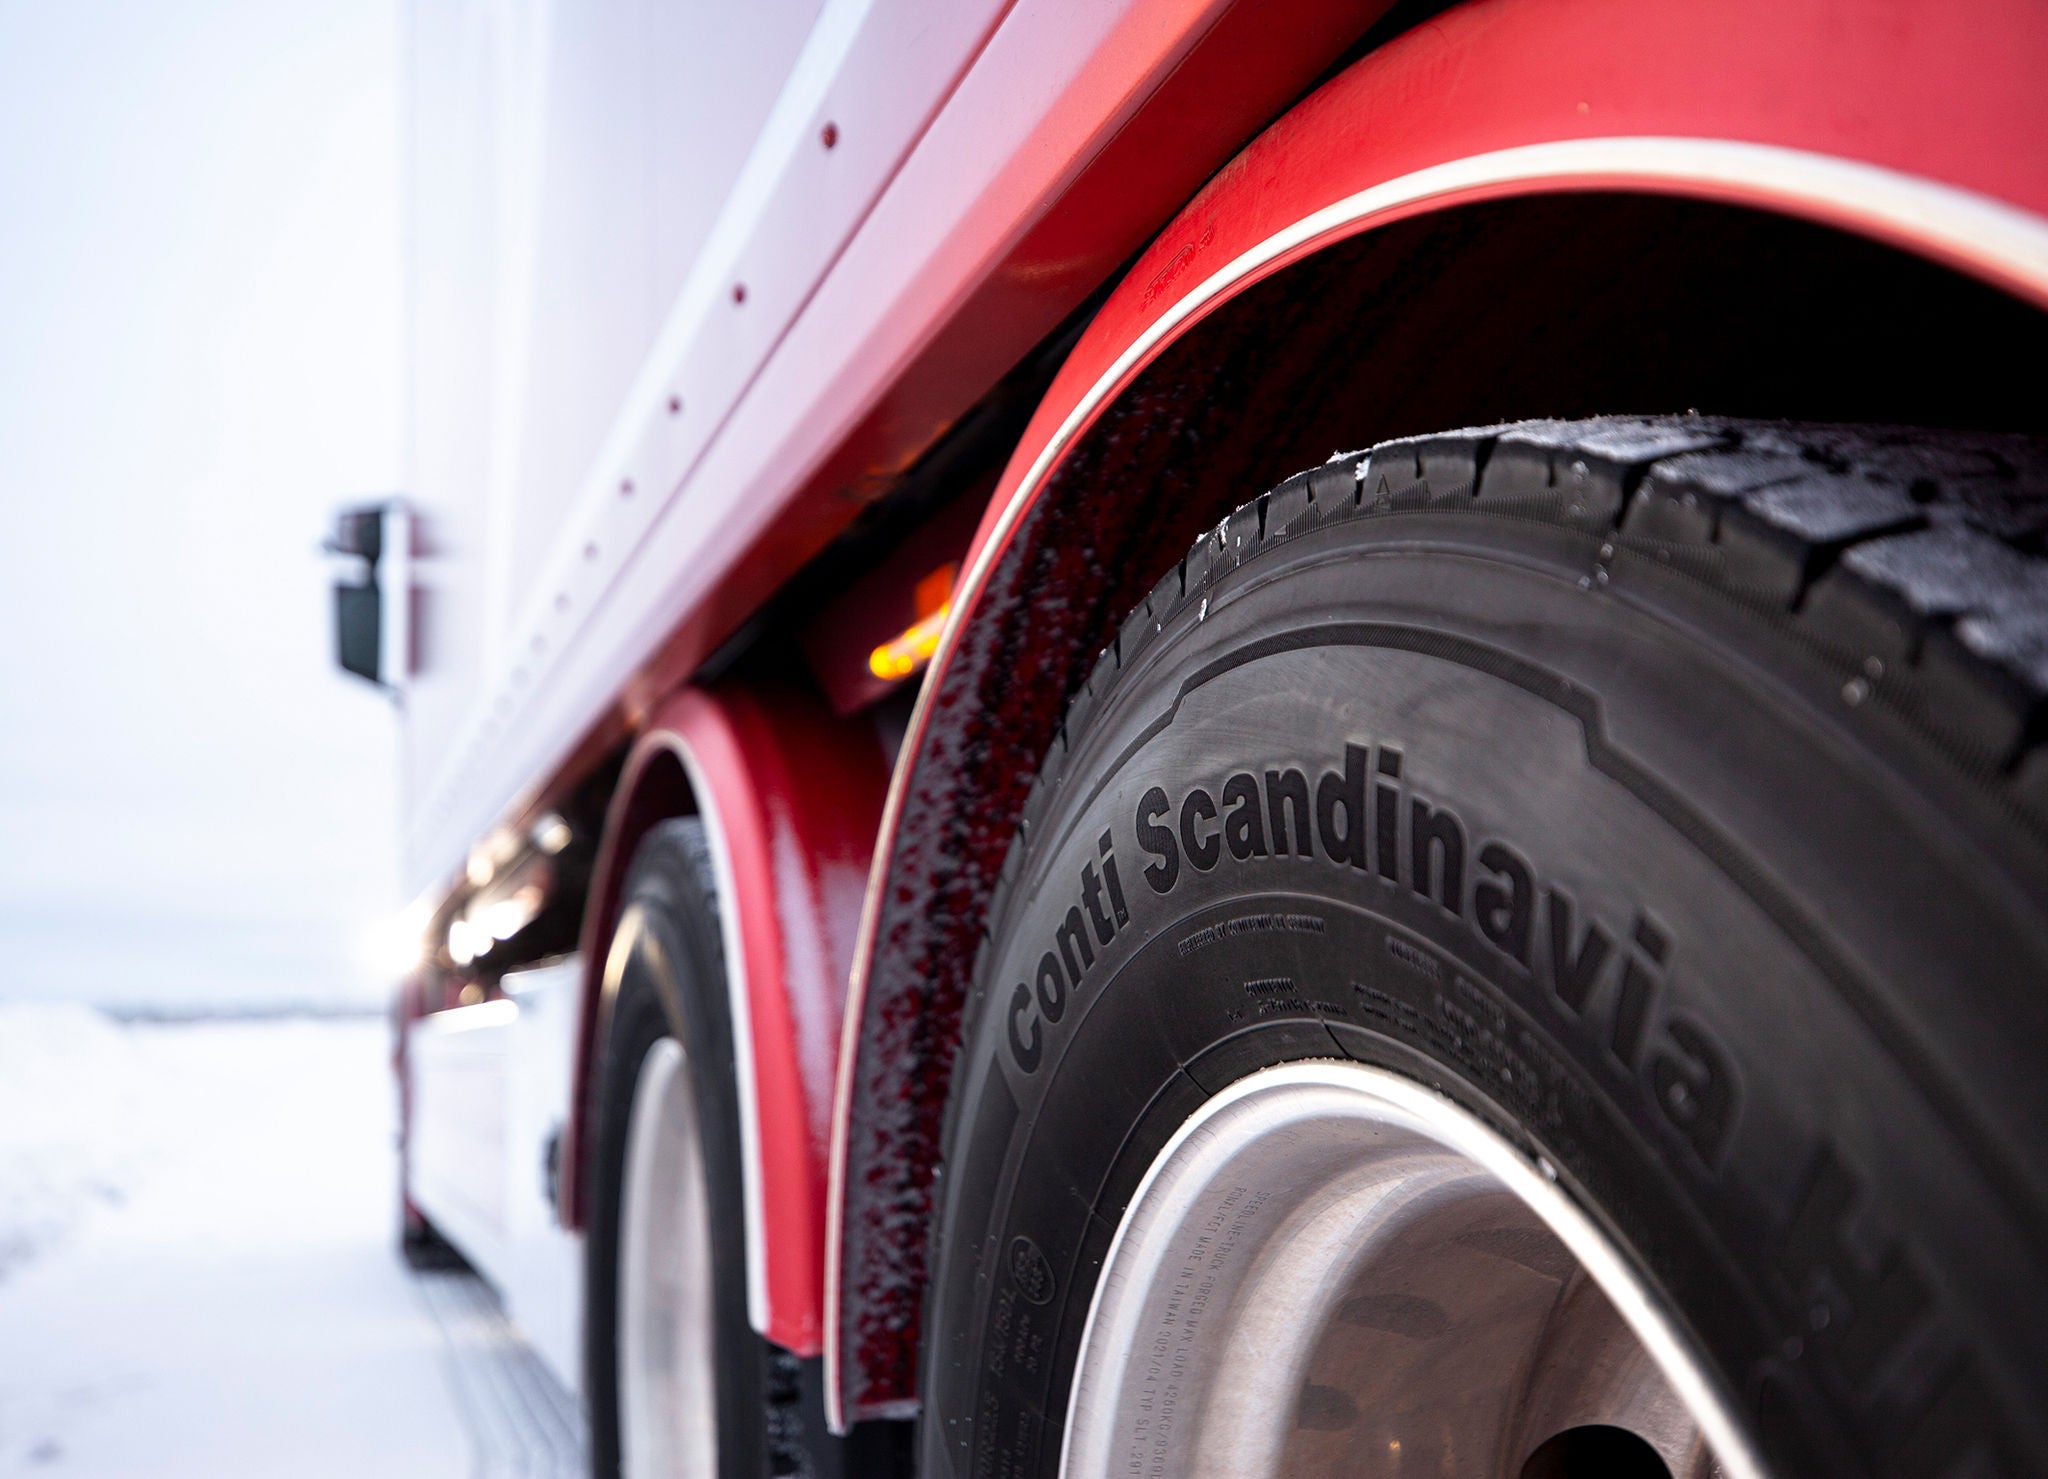 La famille des pneus hiver Scandinavia de Continental : une sécurité optimale en toutes circonstances, même les plus extrêmes.